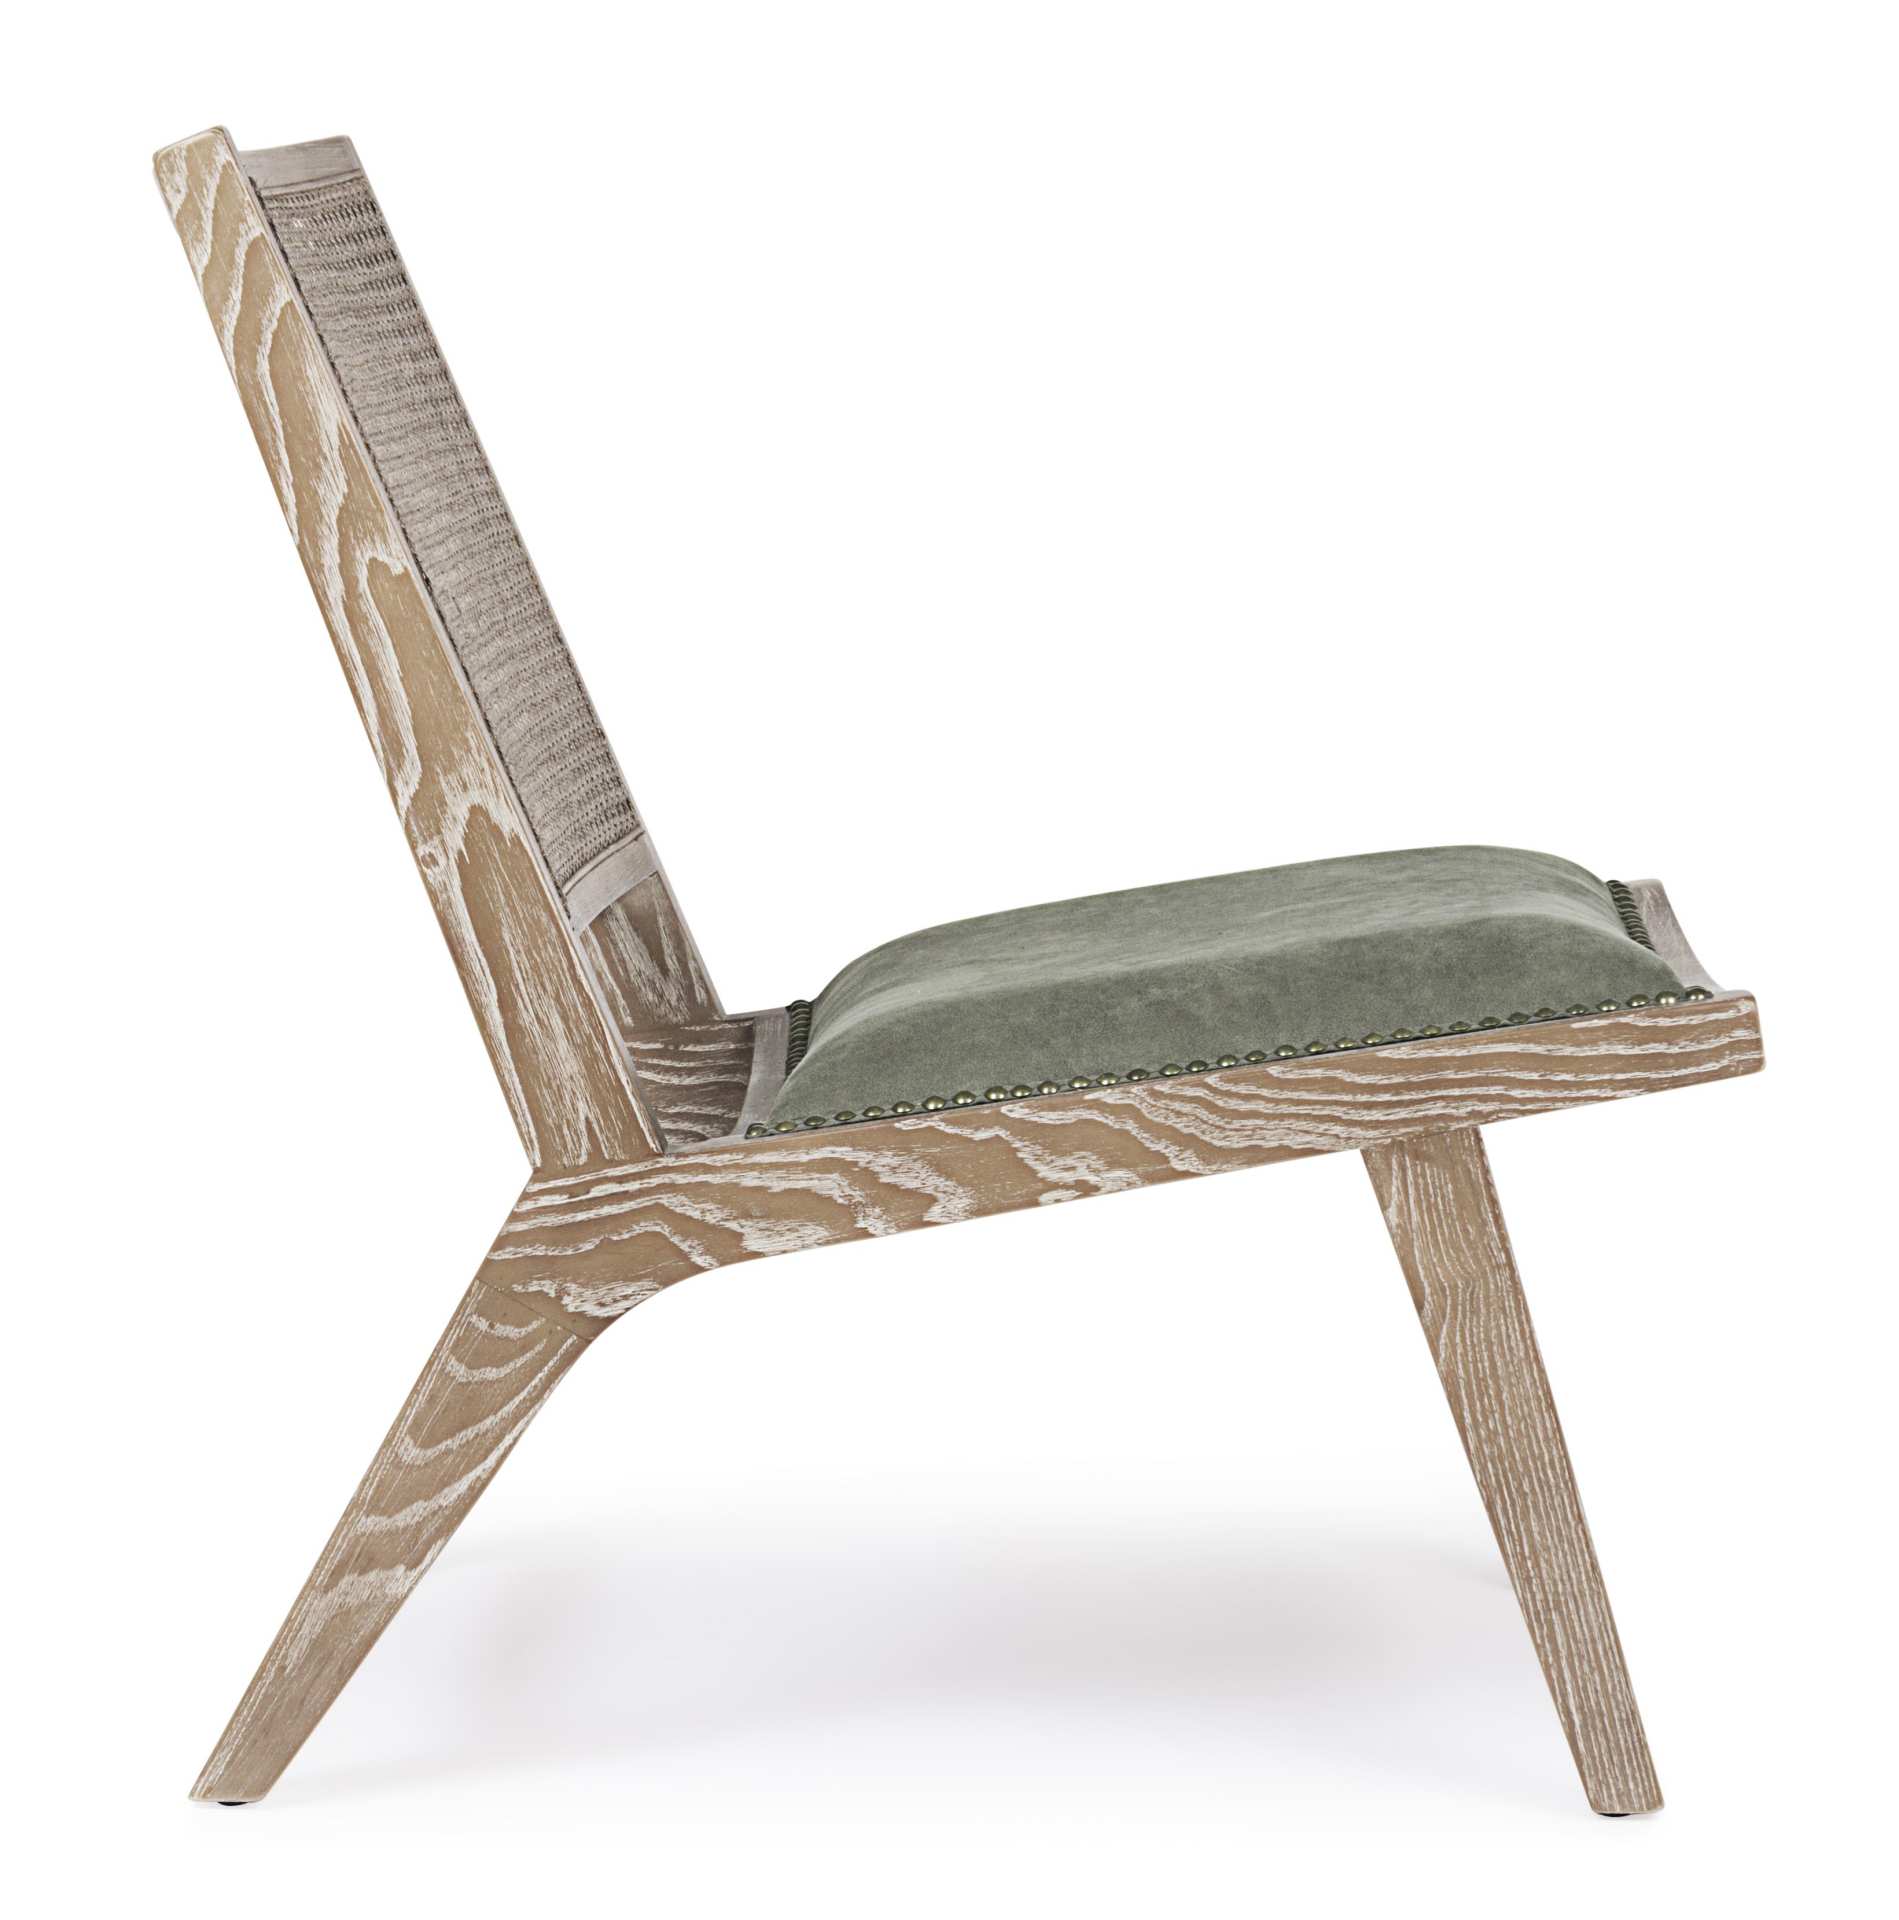 Der Sessel Cortilla überzeugt mit seinem klassischen Design. Gefertigt wurde er aus Stoff, welcher einen grünen Farbton besitzt. Das Gestell ist aus Eschenholz und hat eine natürliche Farbe. Der Sessel besitzt eine Sitzhöhe von 40 cm. Die Breite beträgt 5